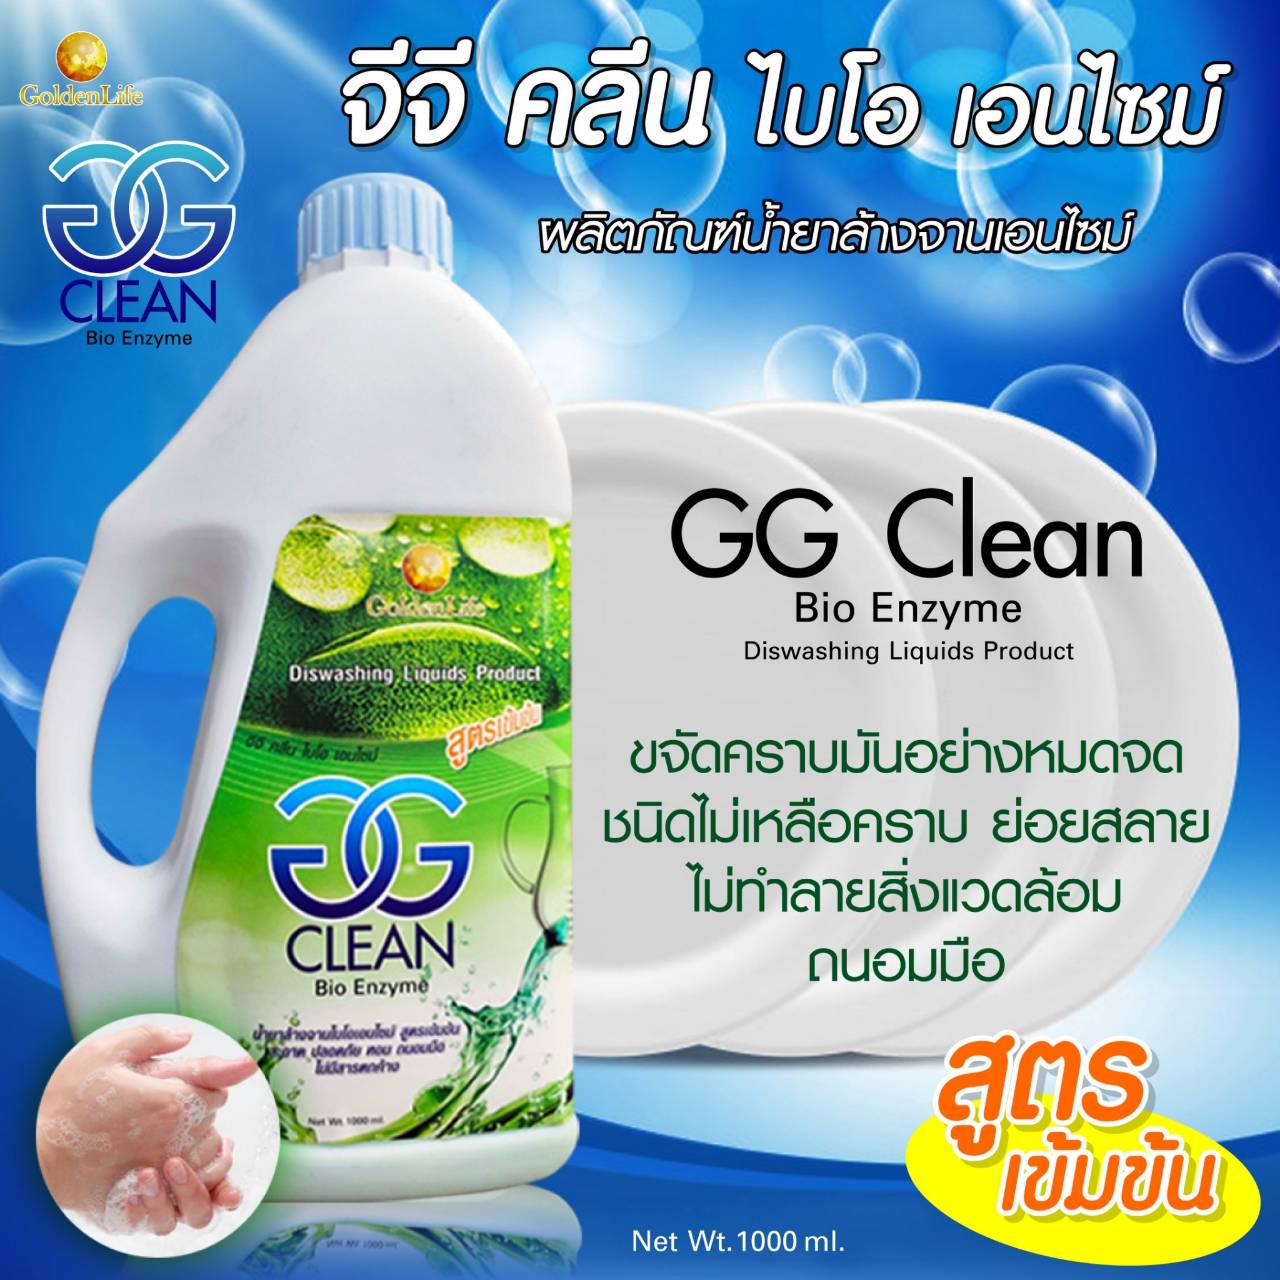 จีจี คลีน ไบโอเอนไซม์ 
(GG CLEAN Bio Enzyme)